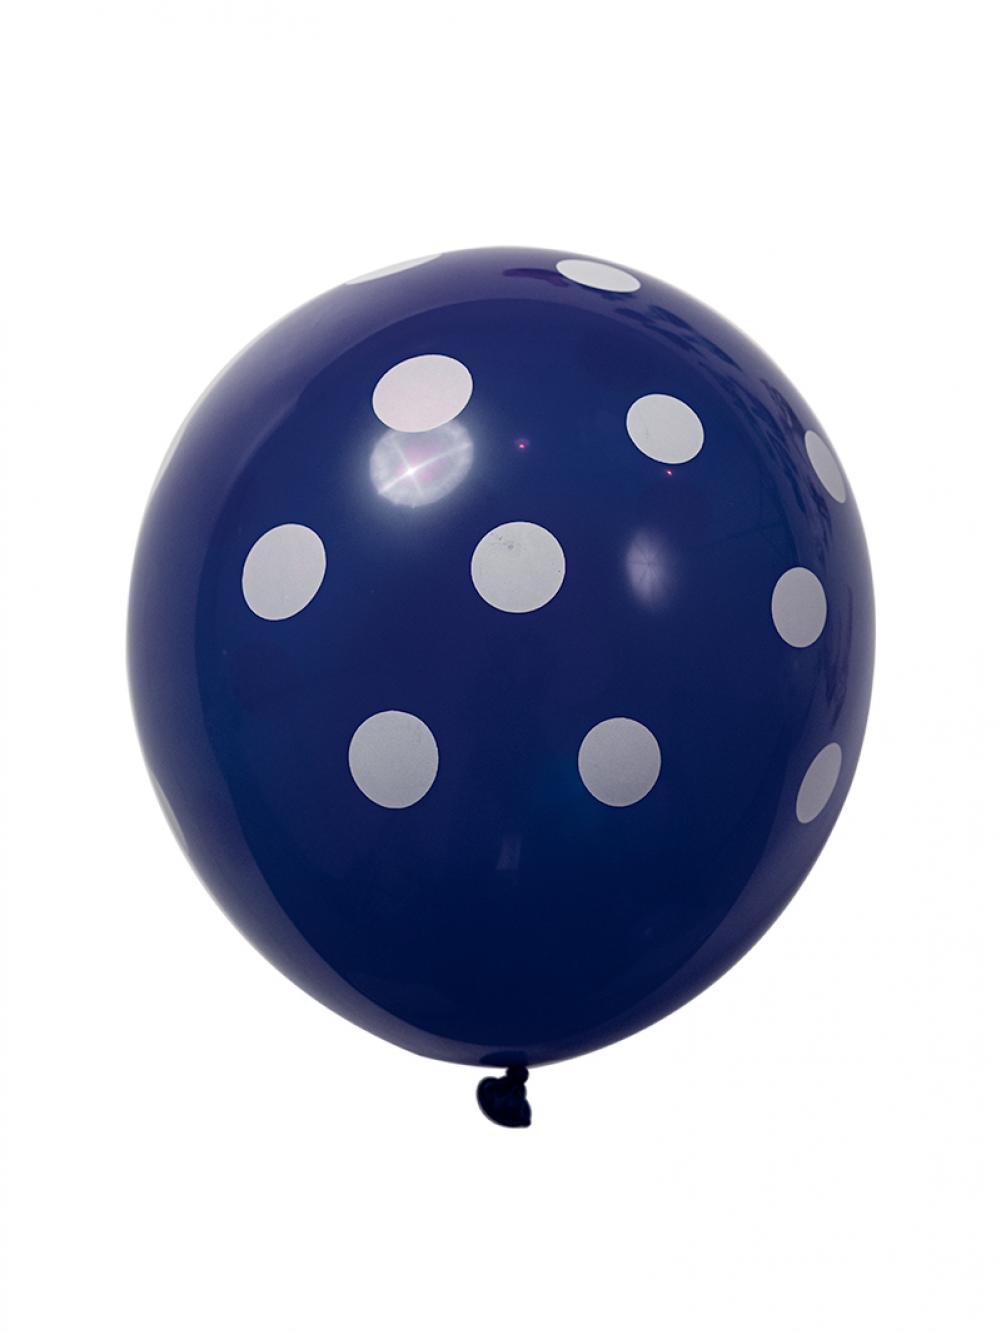 12 Inch Standard Polka Dot Balloons Royal Blue Balloon White Dot (10PCS)